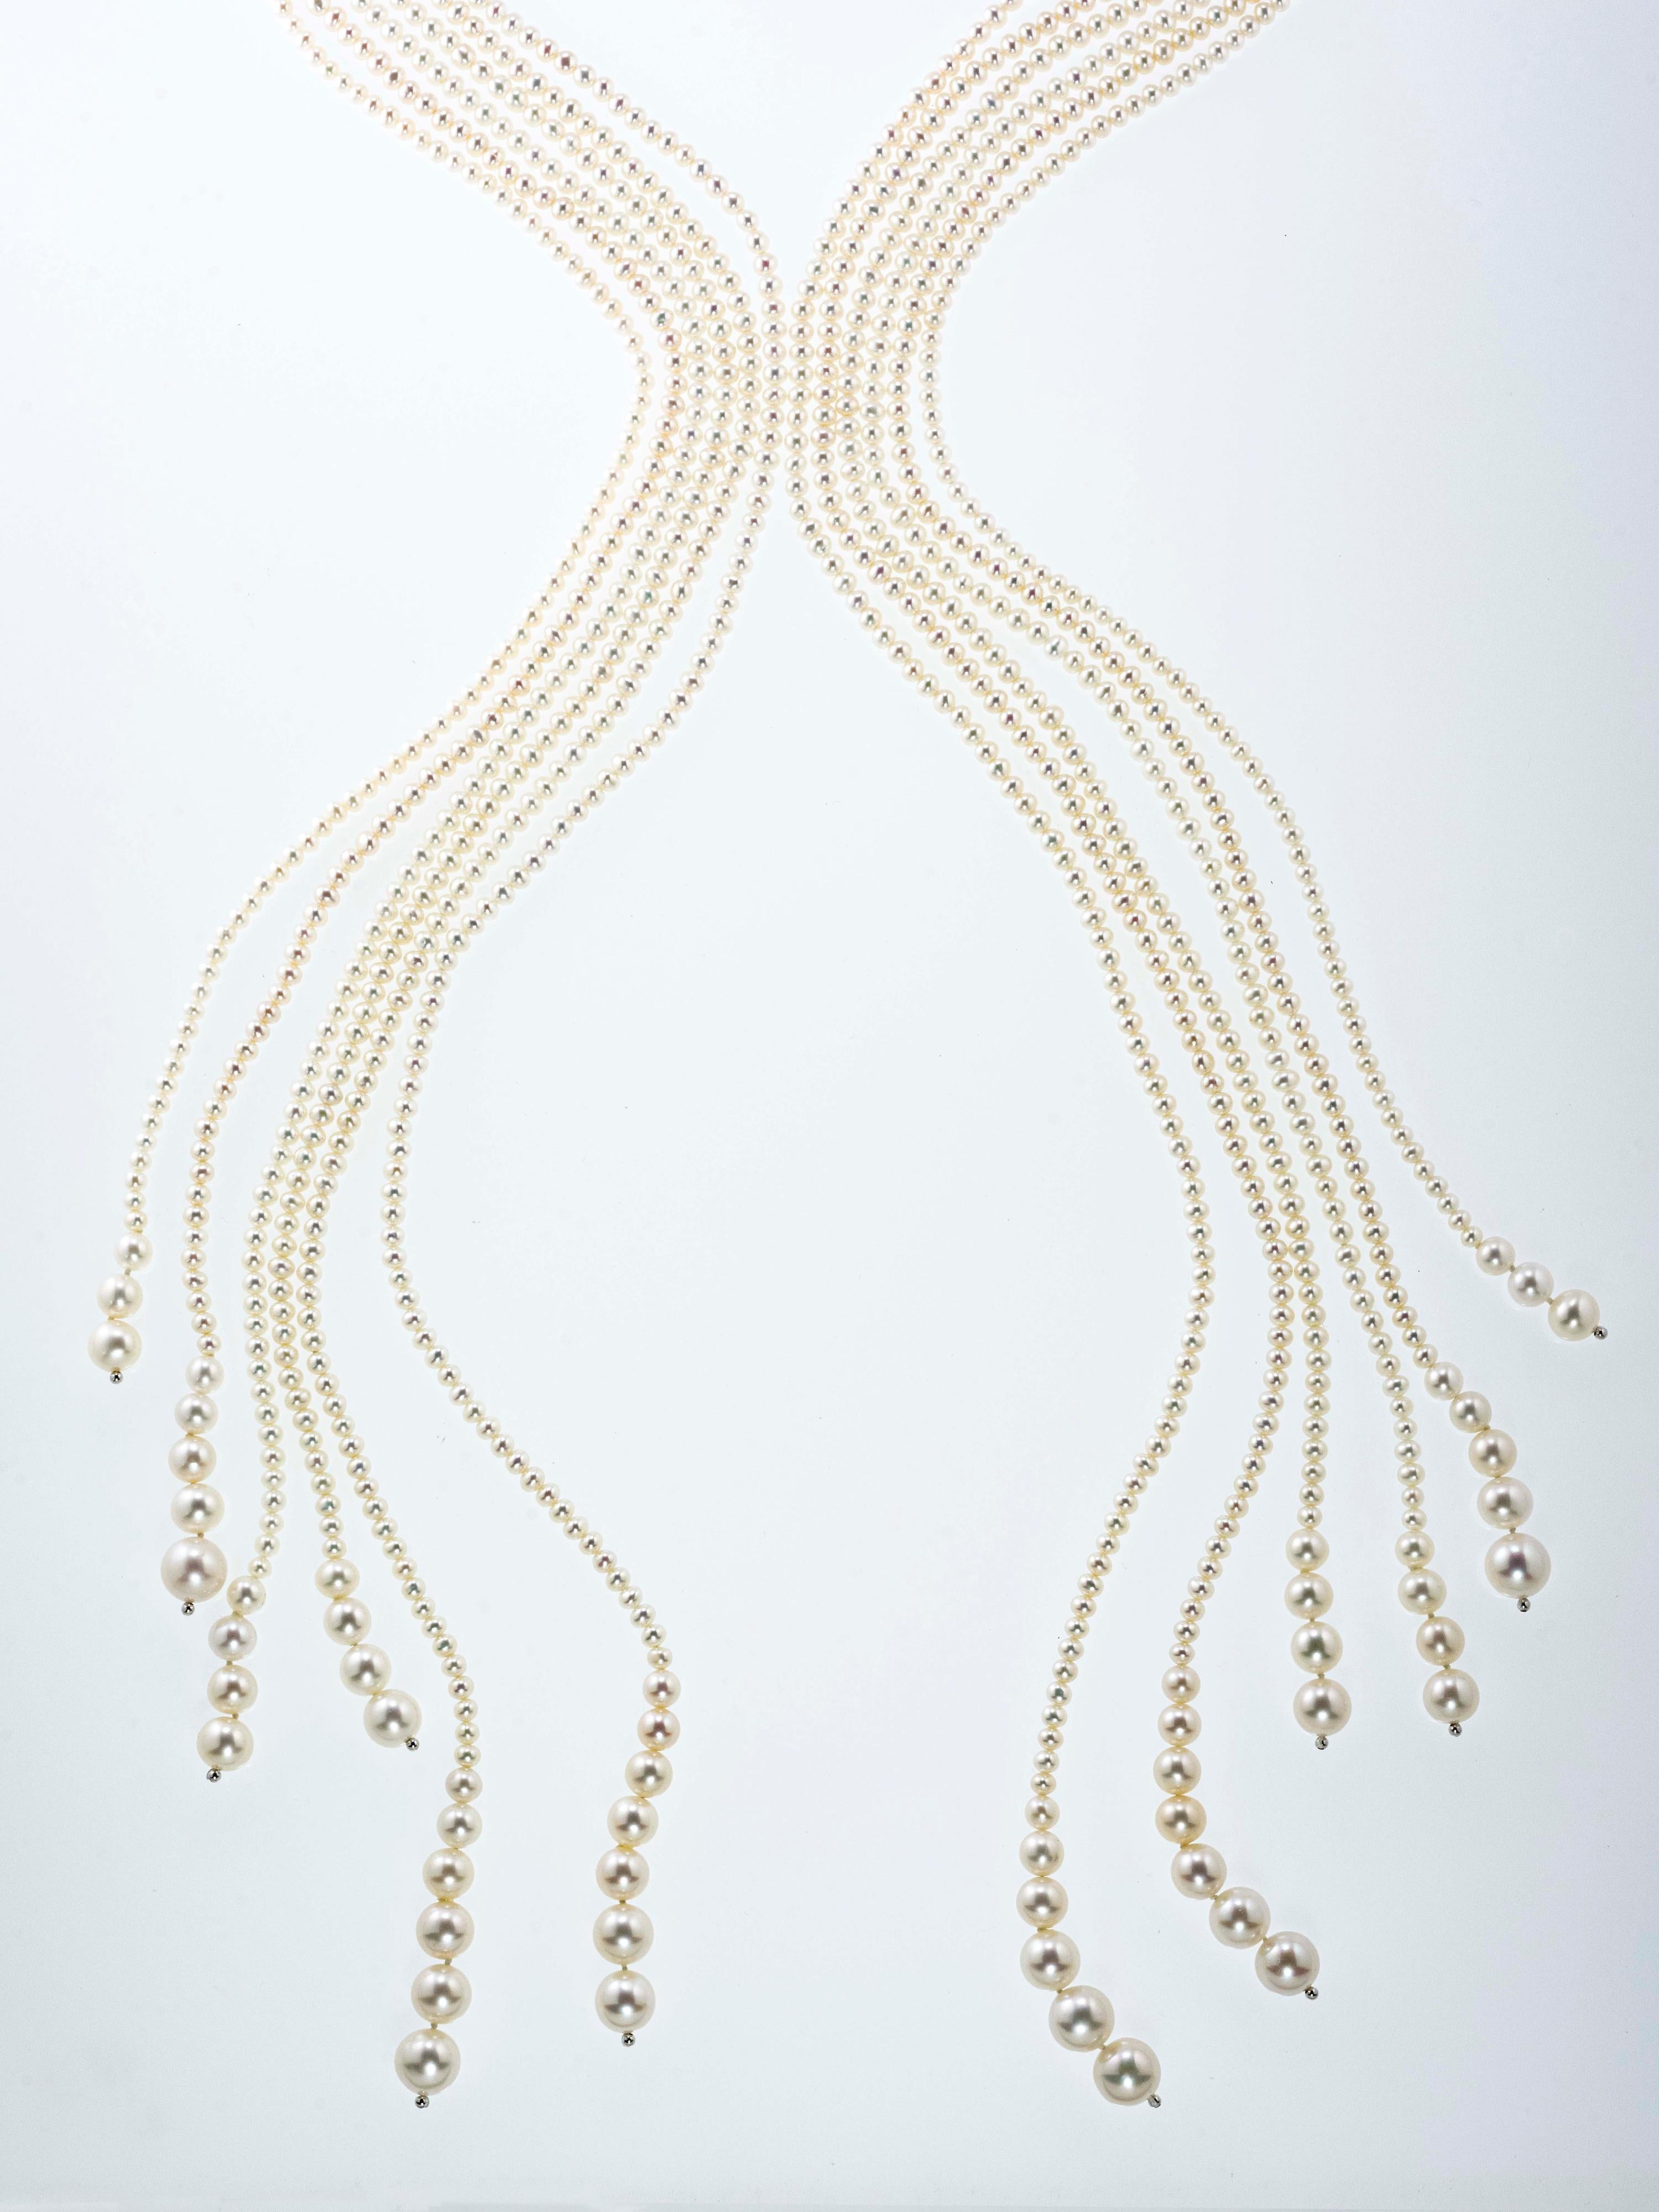 Charmanter und eleganter Sautoir, ganz aus Perlen und in 18 Kt Weißgold gefertigt.
Jeder der sechs Stränge besteht aus Perlen in verschiedenen Größen, von kleineren (Durchmesser 3,50 mm) bis zu größeren (Durchmesser 11,50 mm), und in verschiedenen